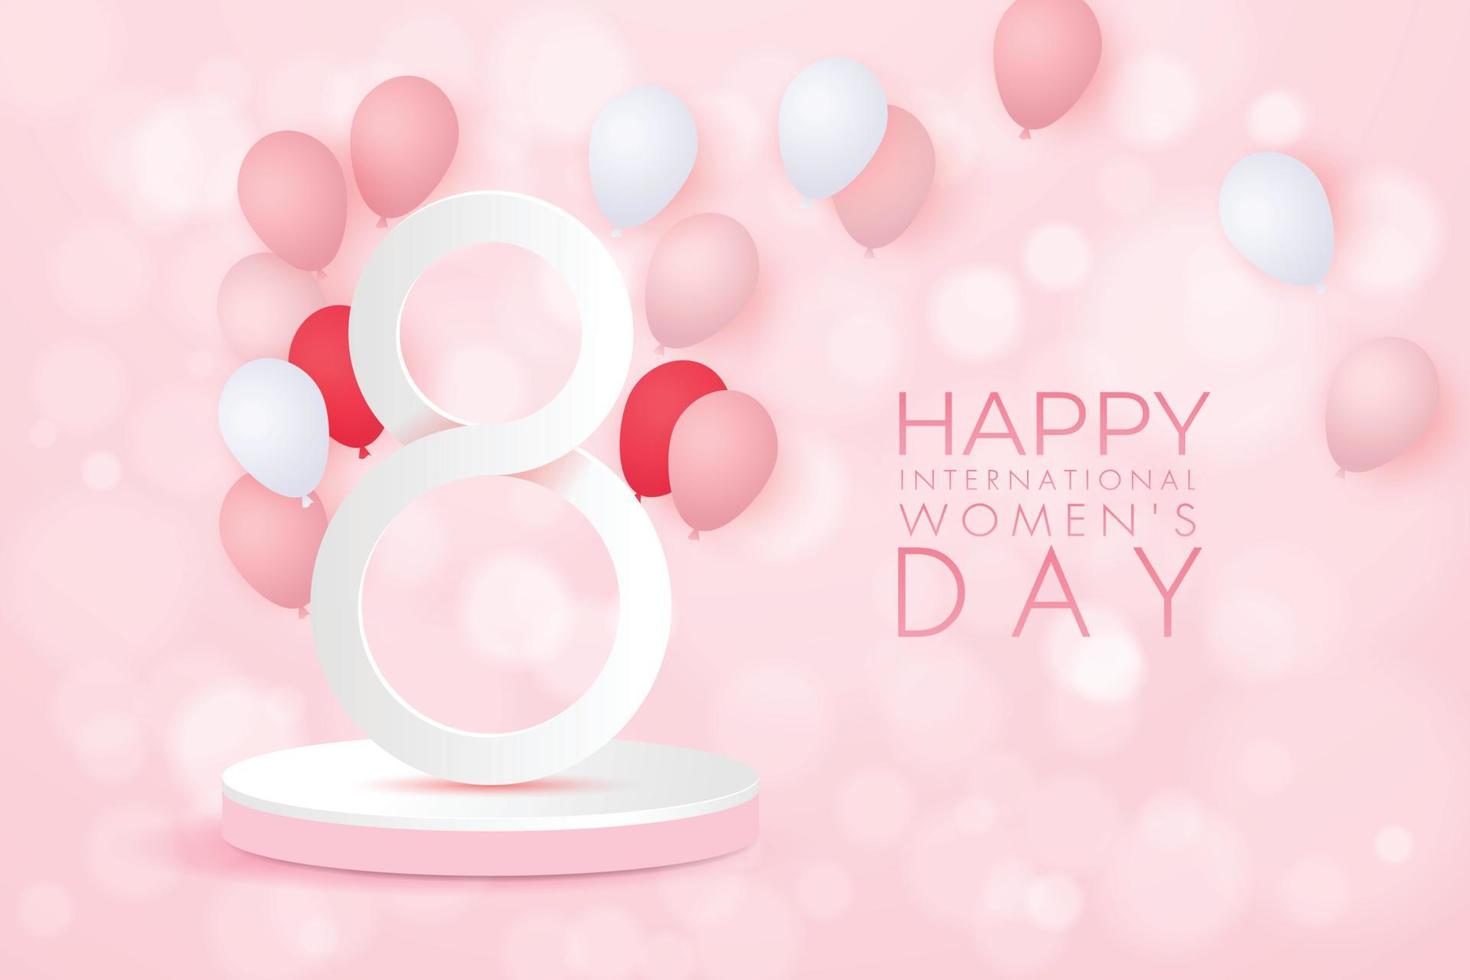 8 mars. modèle de conception des ventes de la journée internationale des femmes. arrière-plan festif avec numéro 8, ballon rose et blanc, numéro blanc 8 sur podium rond rose. illustration de stock de vecteur. vecteur